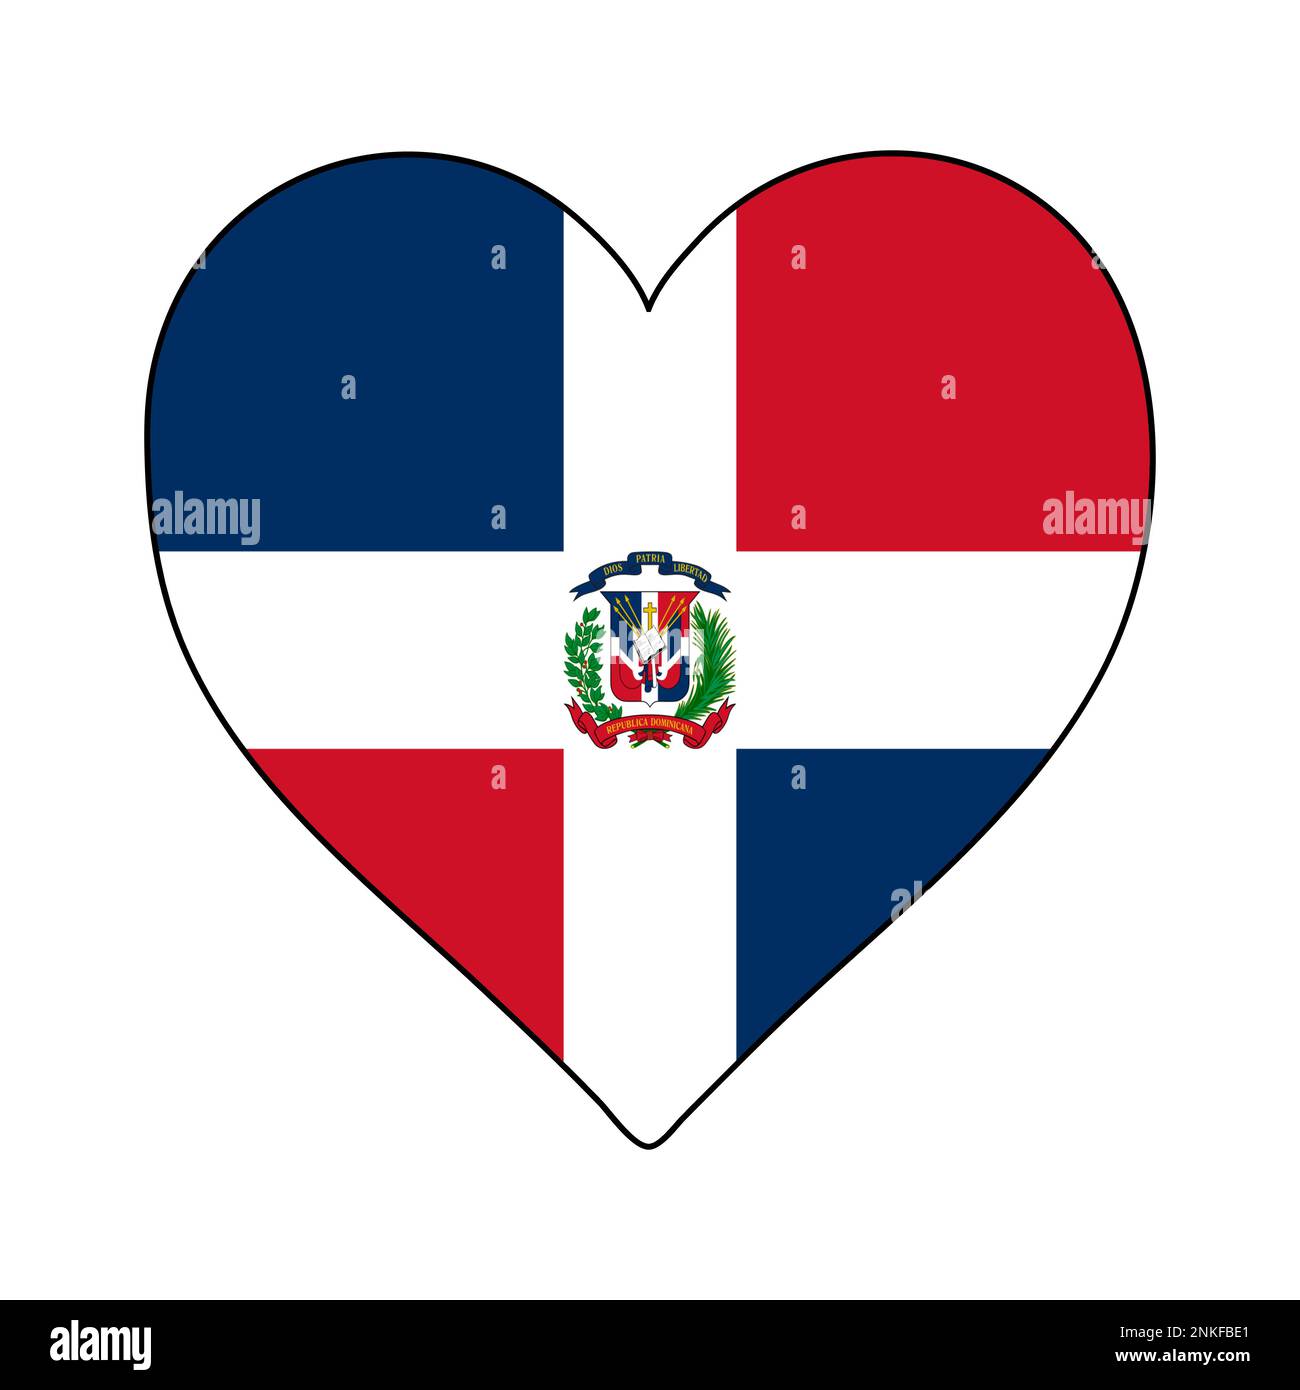 Dominikanische Republik - Herzform Flagge. Ich Liebe Die Dominikanische Republik. Besuchen Sie Die Dominikanische Republik. Karibik. Lateinamerika. Grafische Konstruktion Von Vektordarstellungen. Stock Vektor